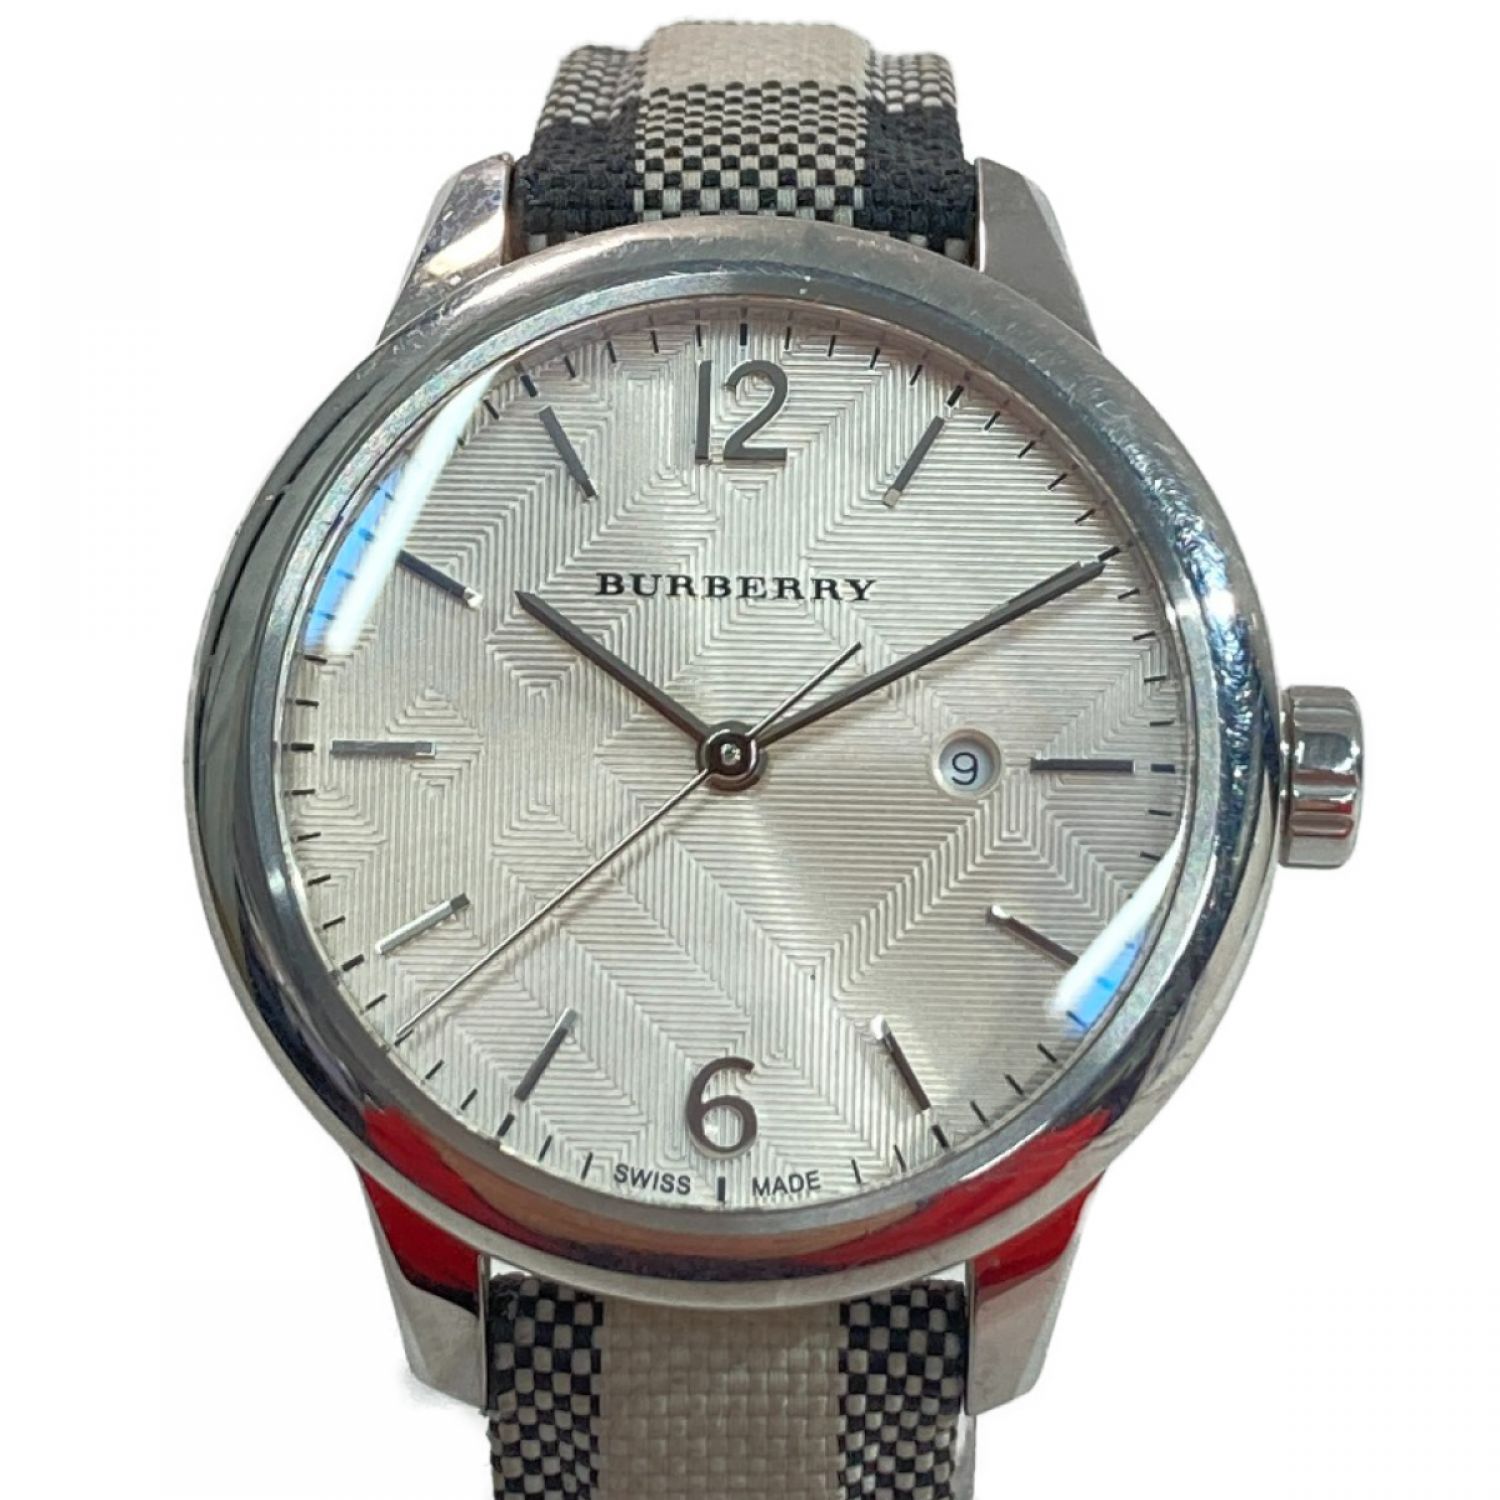 ◎◎ BURBERRY バーバリー 腕時計 BU10112 ホワイト x シルバー 